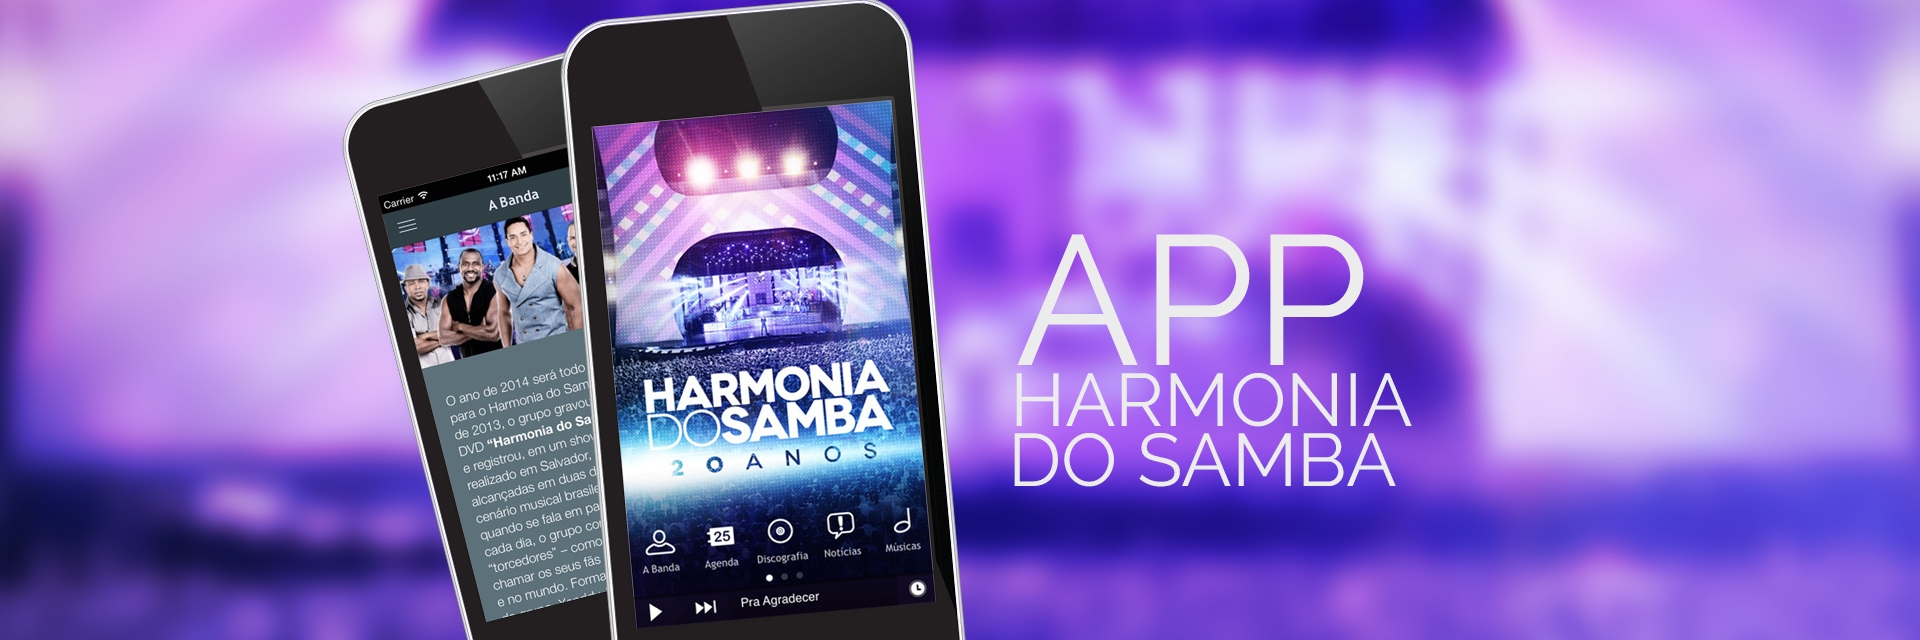 Harmonia do Samba